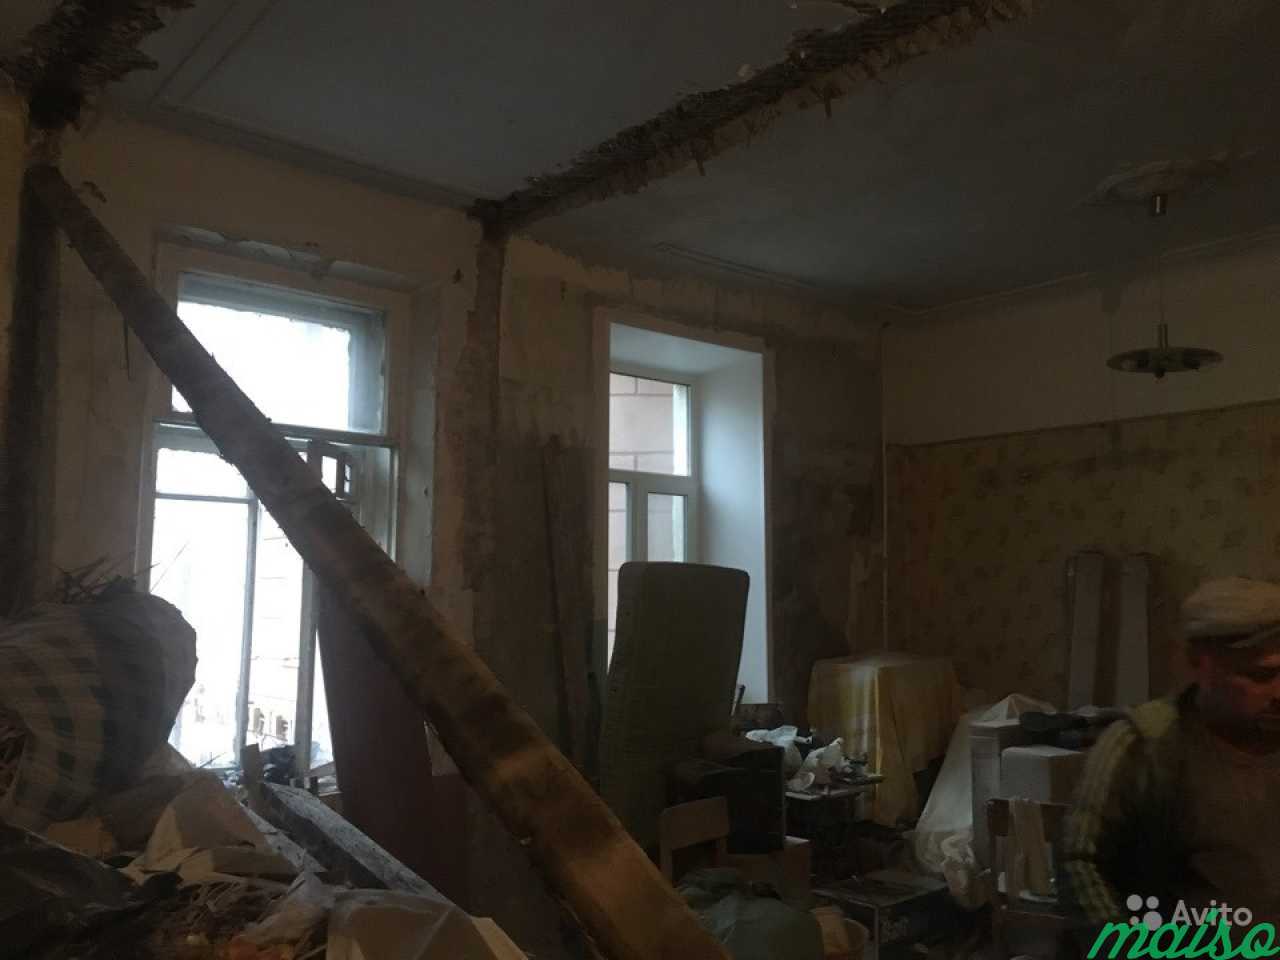 Демонтажные работы в Санкт-Петербурге. Фото 4